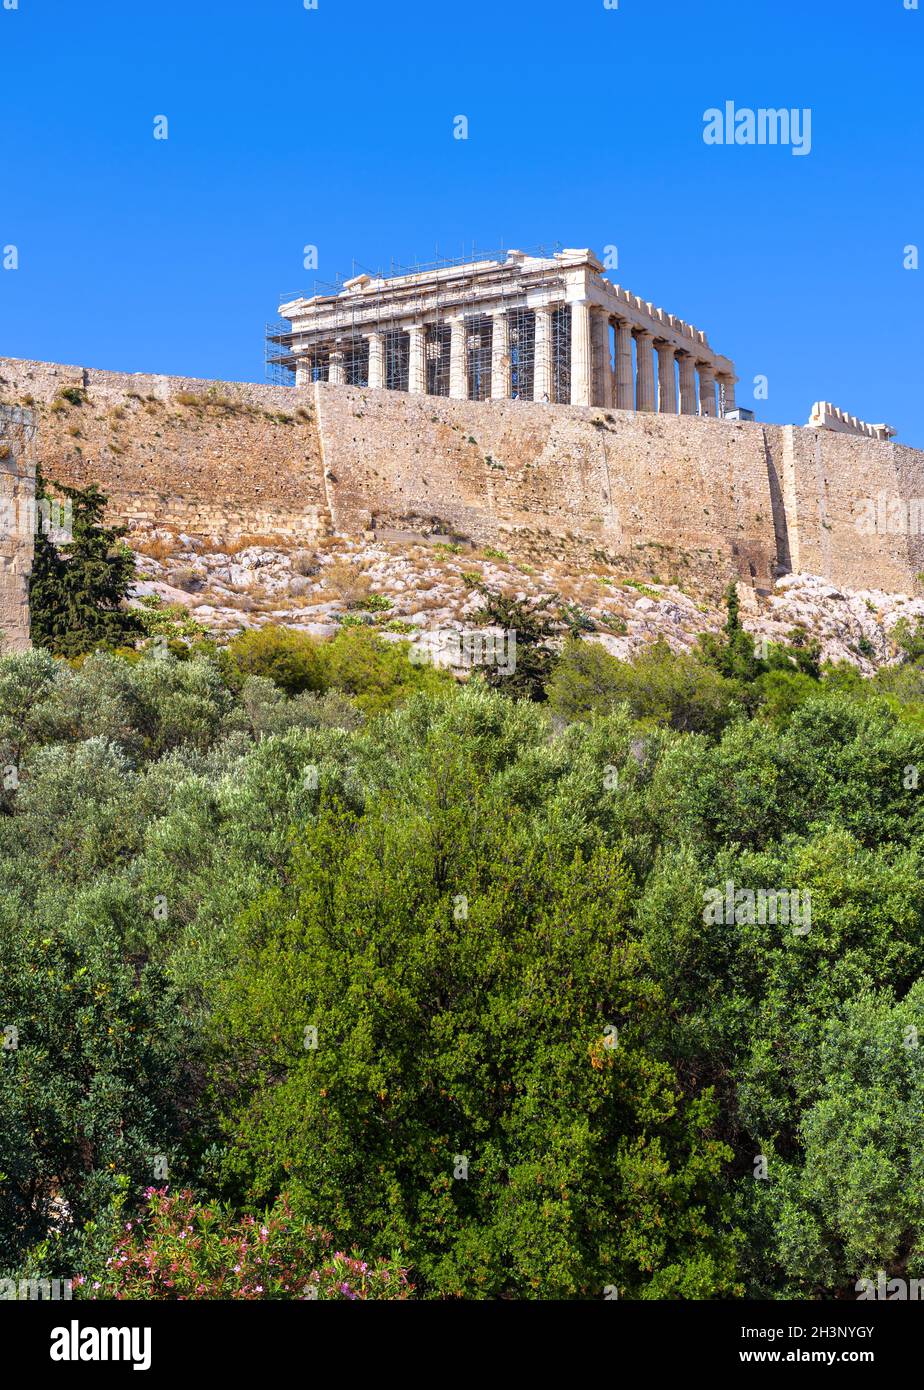 Akropolis von Athen, Griechenland. Berühmter Parthenon Tempel auf seiner Spitze. Dieser Ort ist Wahrzeichen von Athen. Alte griechische Ruinen der Akropolis Hügel, alte Architec Stockfoto